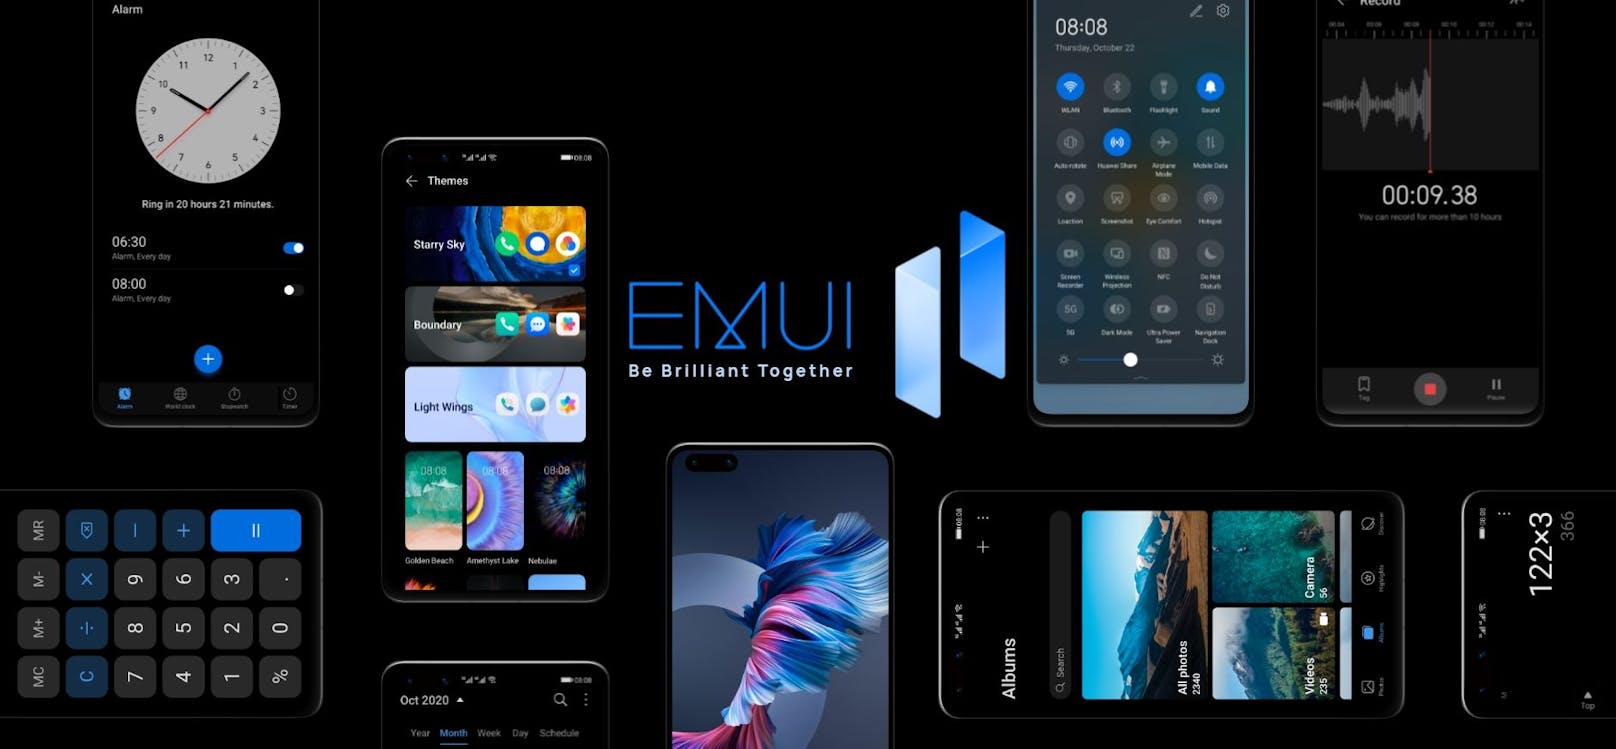 EMUI (Emotion User Interface) ist die eigene Smartphone-Benutzeroberfläche von Huawei.&nbsp;